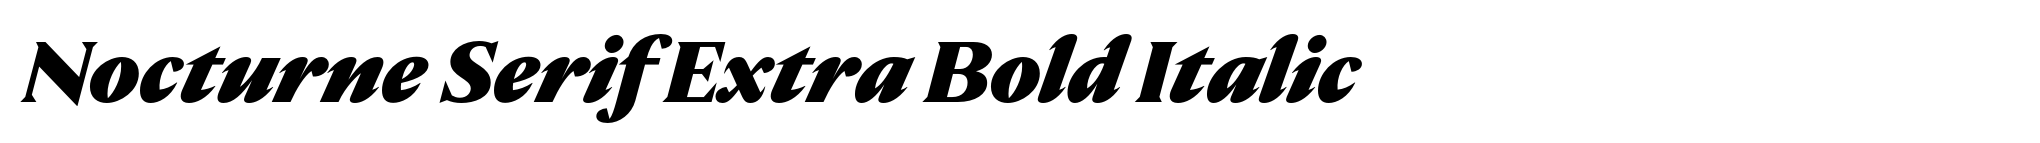 Nocturne Serif Extra Bold Italic image